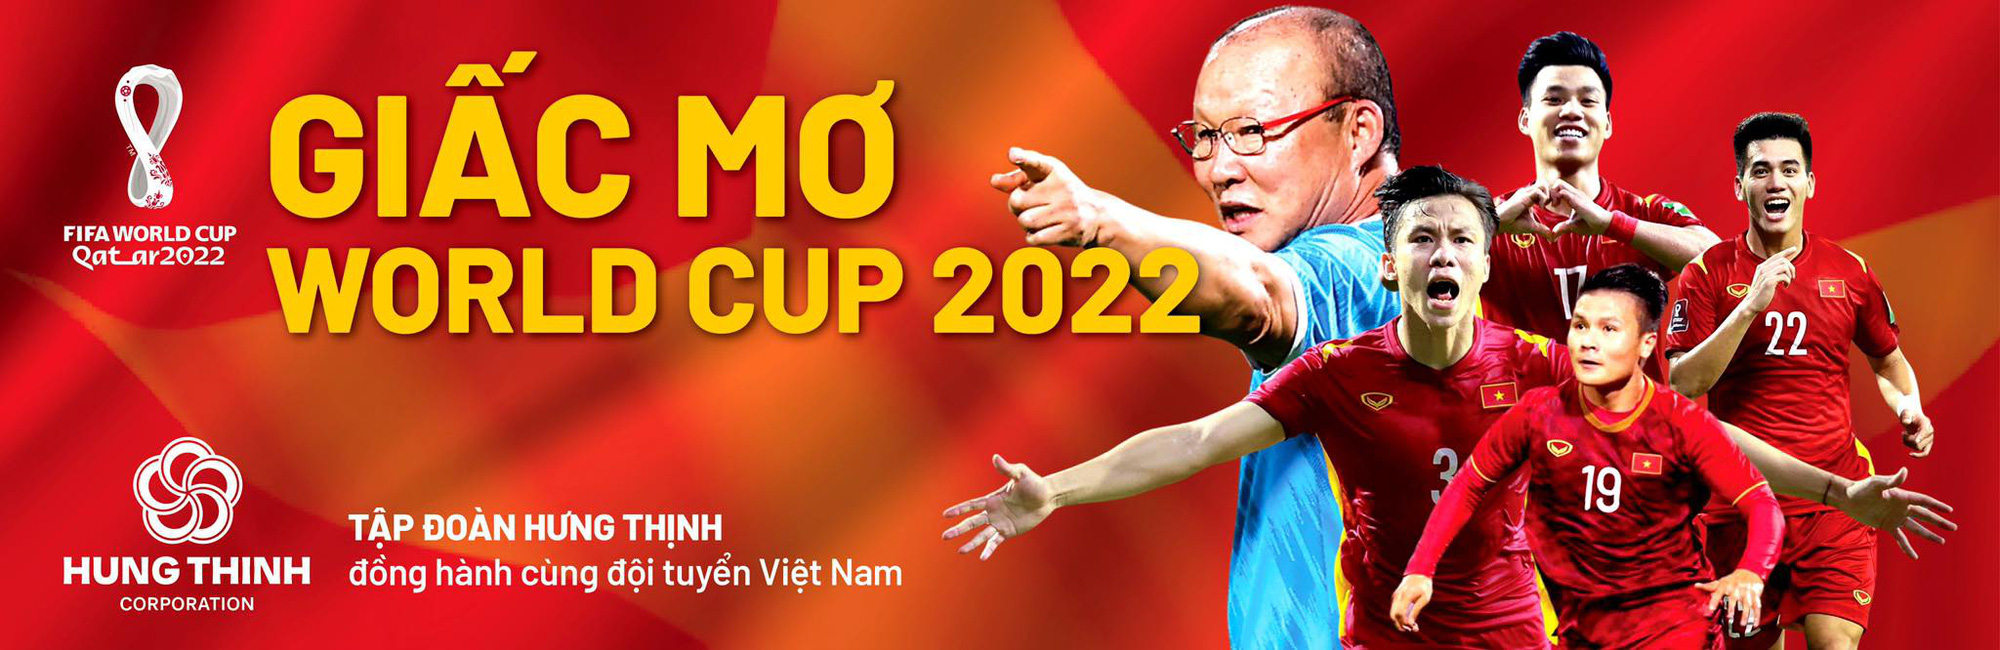 Lịch trực tiếp Việt Nam - Trung Quốc ở vòng loại World Cup 2022